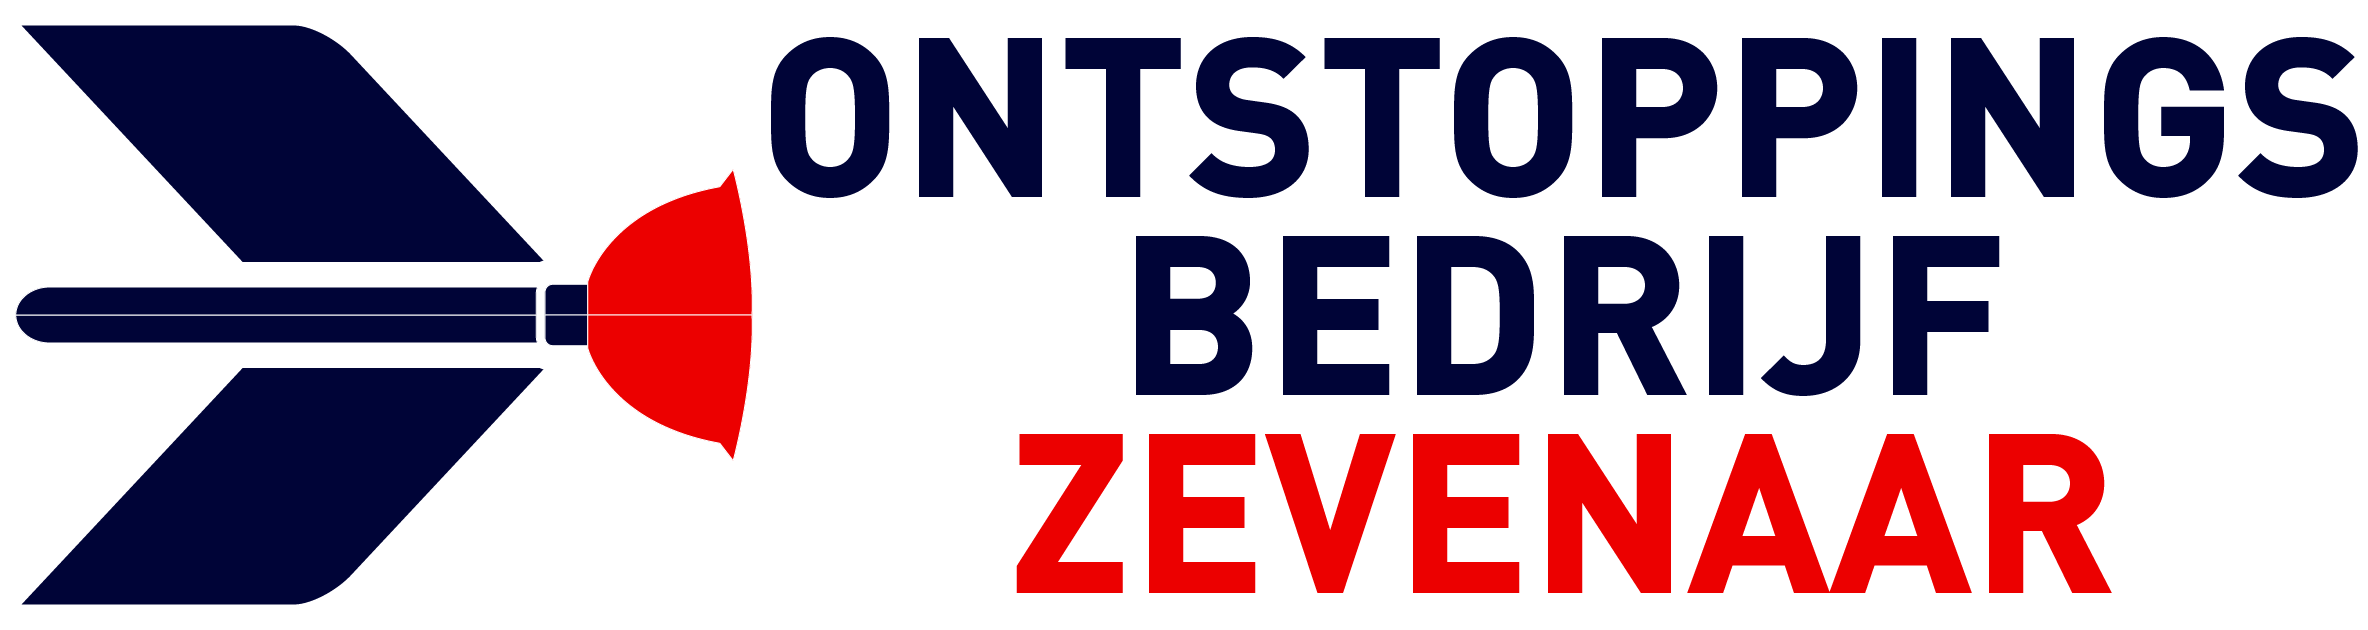 Ontstoppingsbedrijf Zevenaar logo